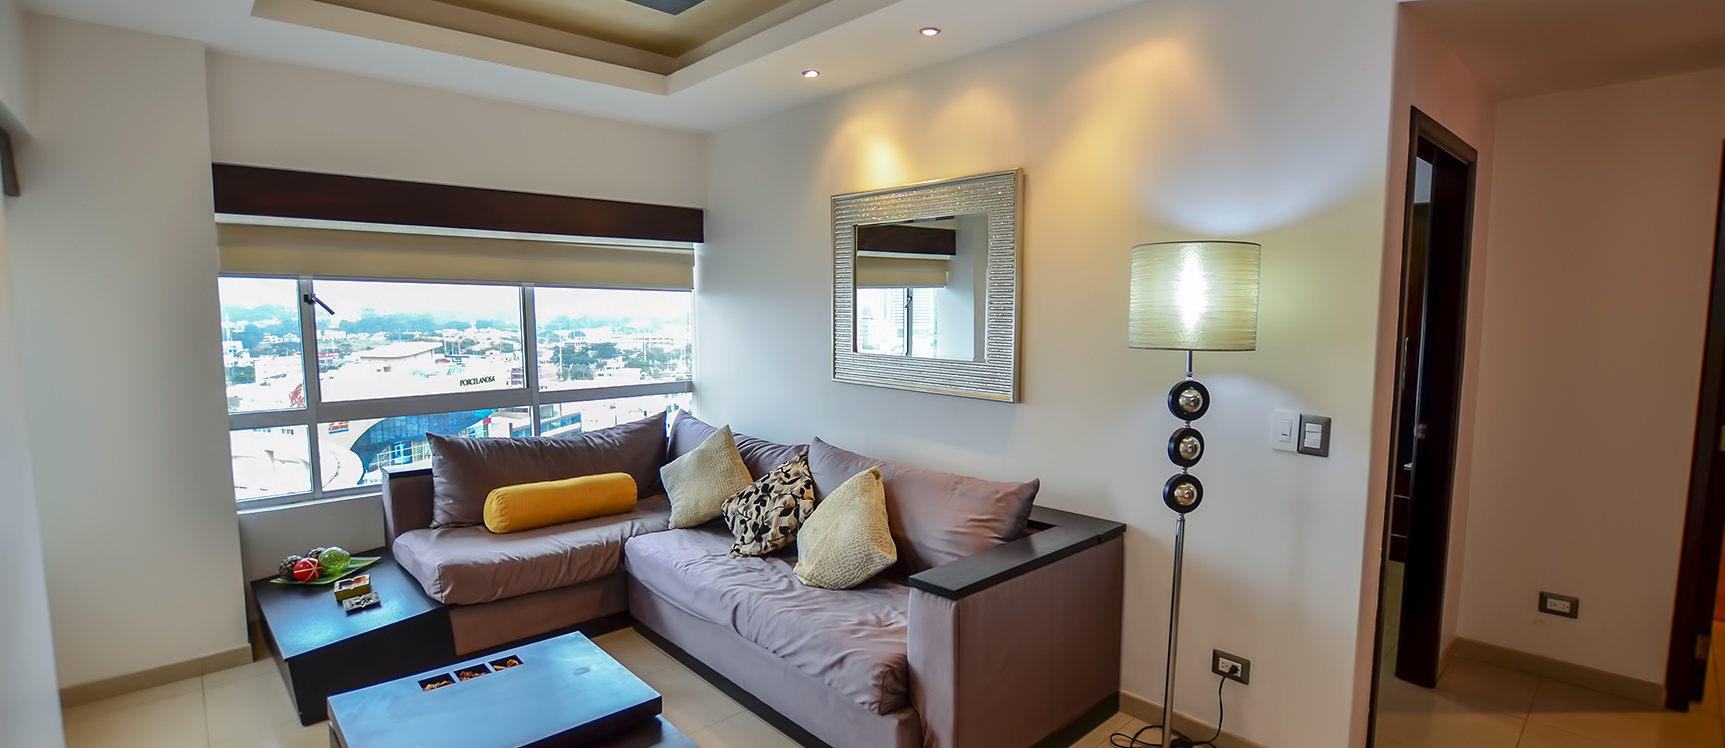 GeoBienes - Suite en alquiler en Torre del Sol I sector norte de Guayaquil - Plusvalia Guayaquil Casas de venta y alquiler Inmobiliaria Ecuador